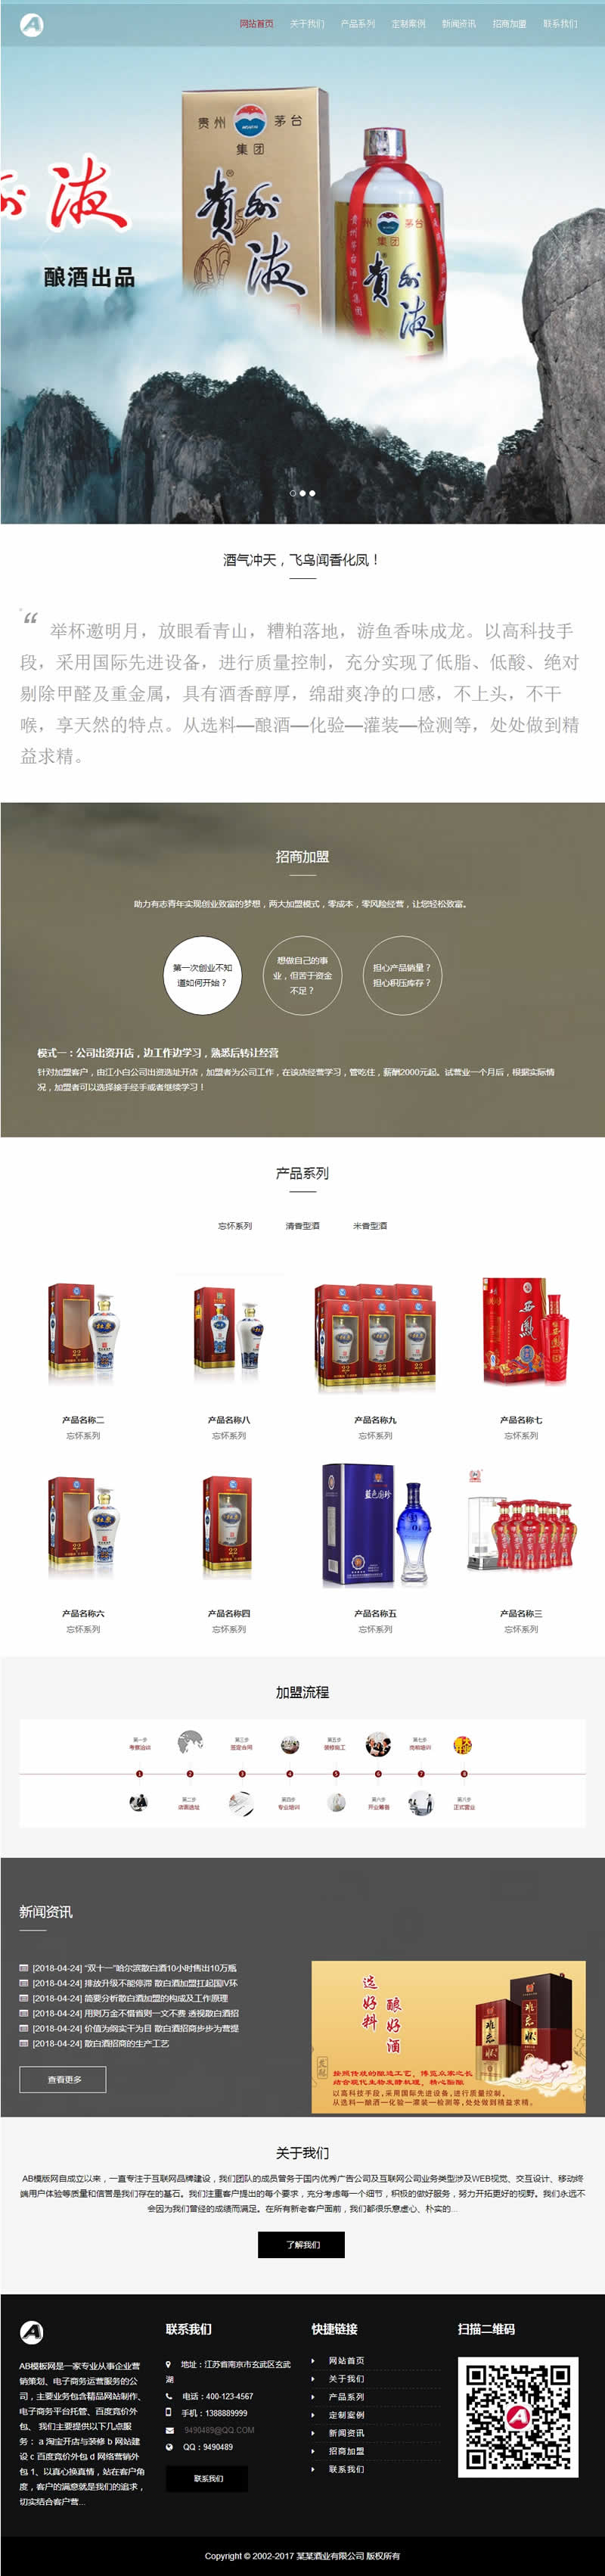 响应式高端酒业包装设计类网站源码 HTML5白酒包装礼盒网站